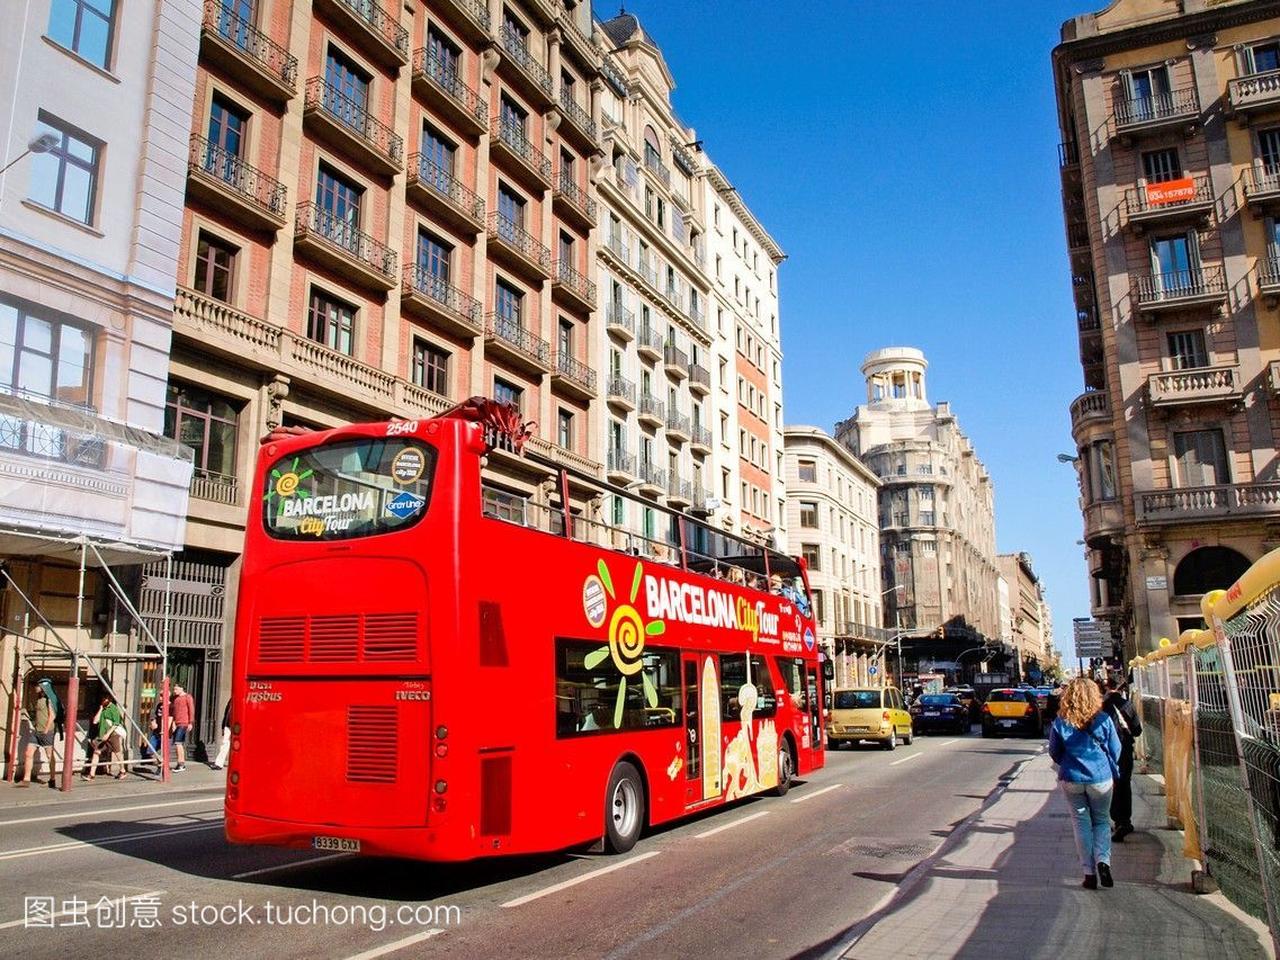 巴塞罗那市旅游巴士,红色旅游巴士。位于西班